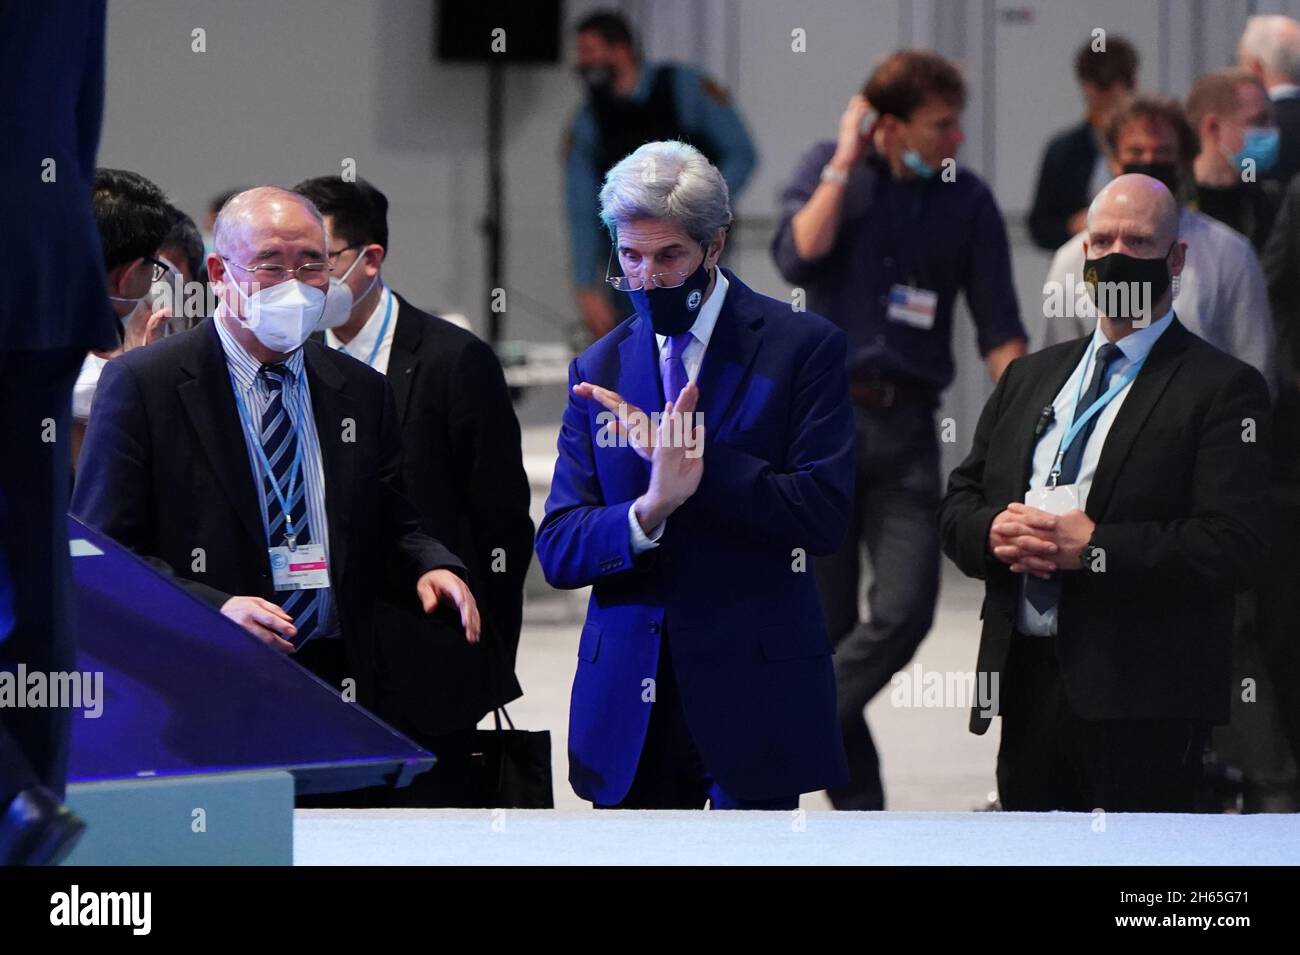 DER SONDERBEAUFTRAGTE des US-Präsidenten für den Klimaschutz, John Kerry, zeigt sich mit seinen Händen, während er während eines „Overun“-Tages des Cop26-Gipfels in Glasgow mit Delegierten aus China auf einer informellen Plenarsitzung zur Bestandsaufnahme spricht. Bilddatum: Samstag, 13. November 2021. Stockfoto